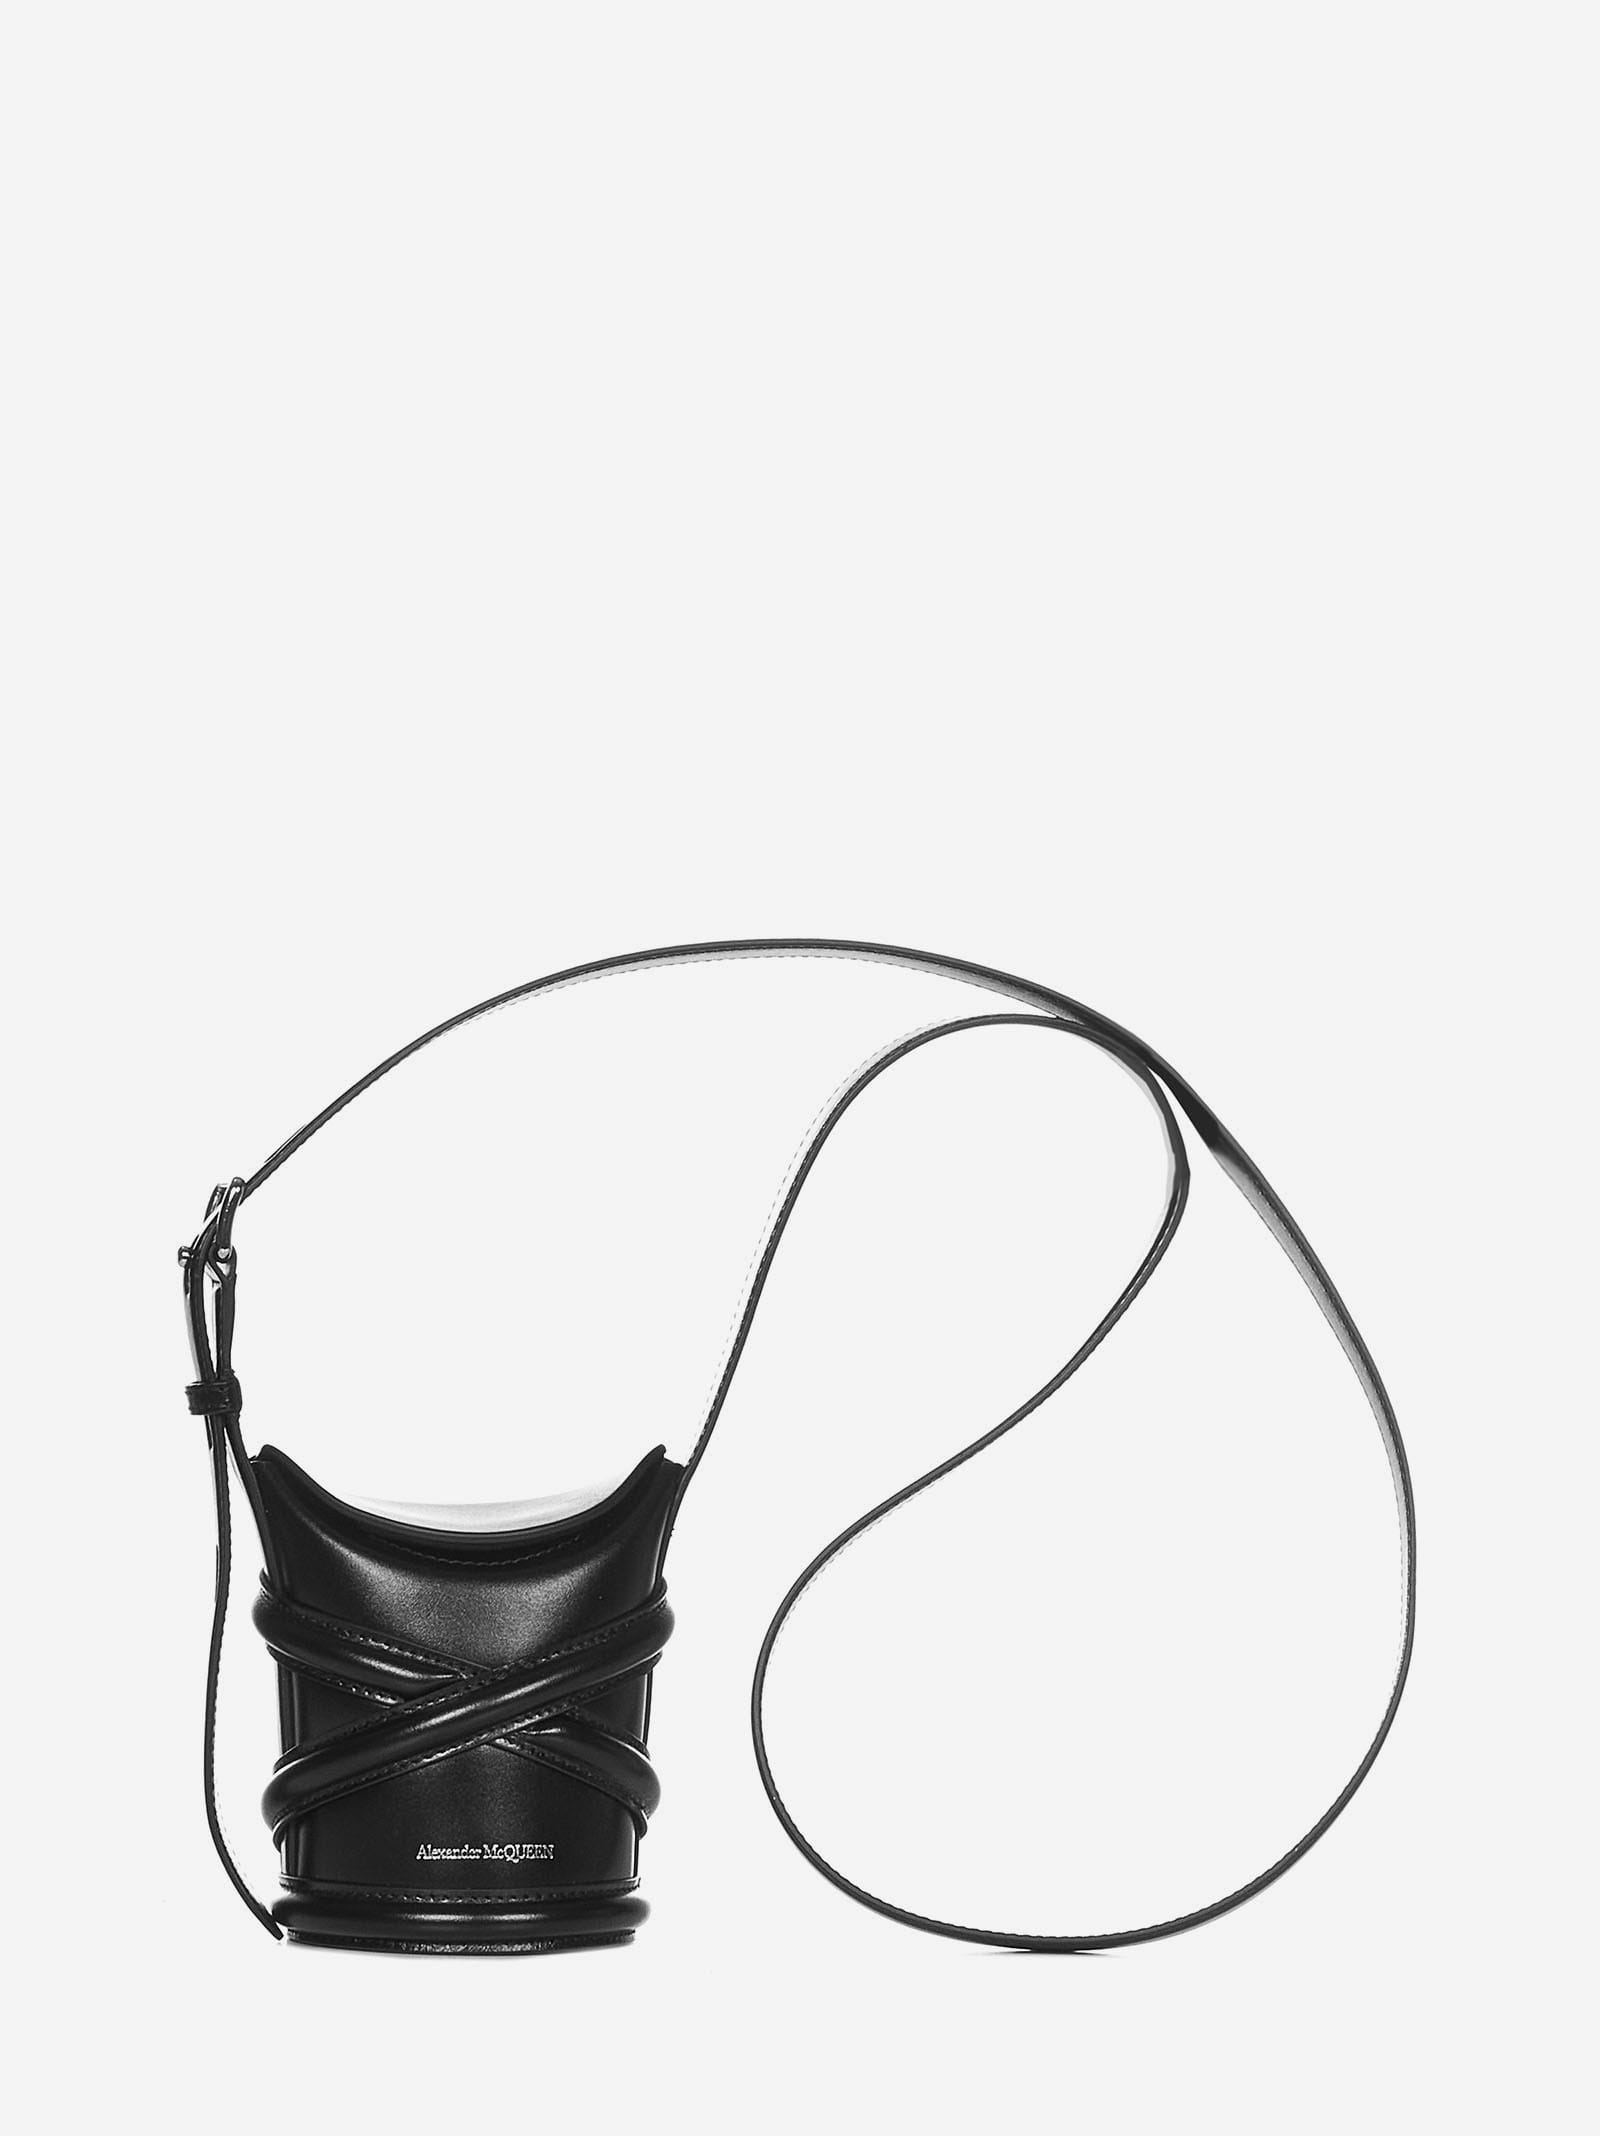 Alexander McQueen The Curve Bucket Bag